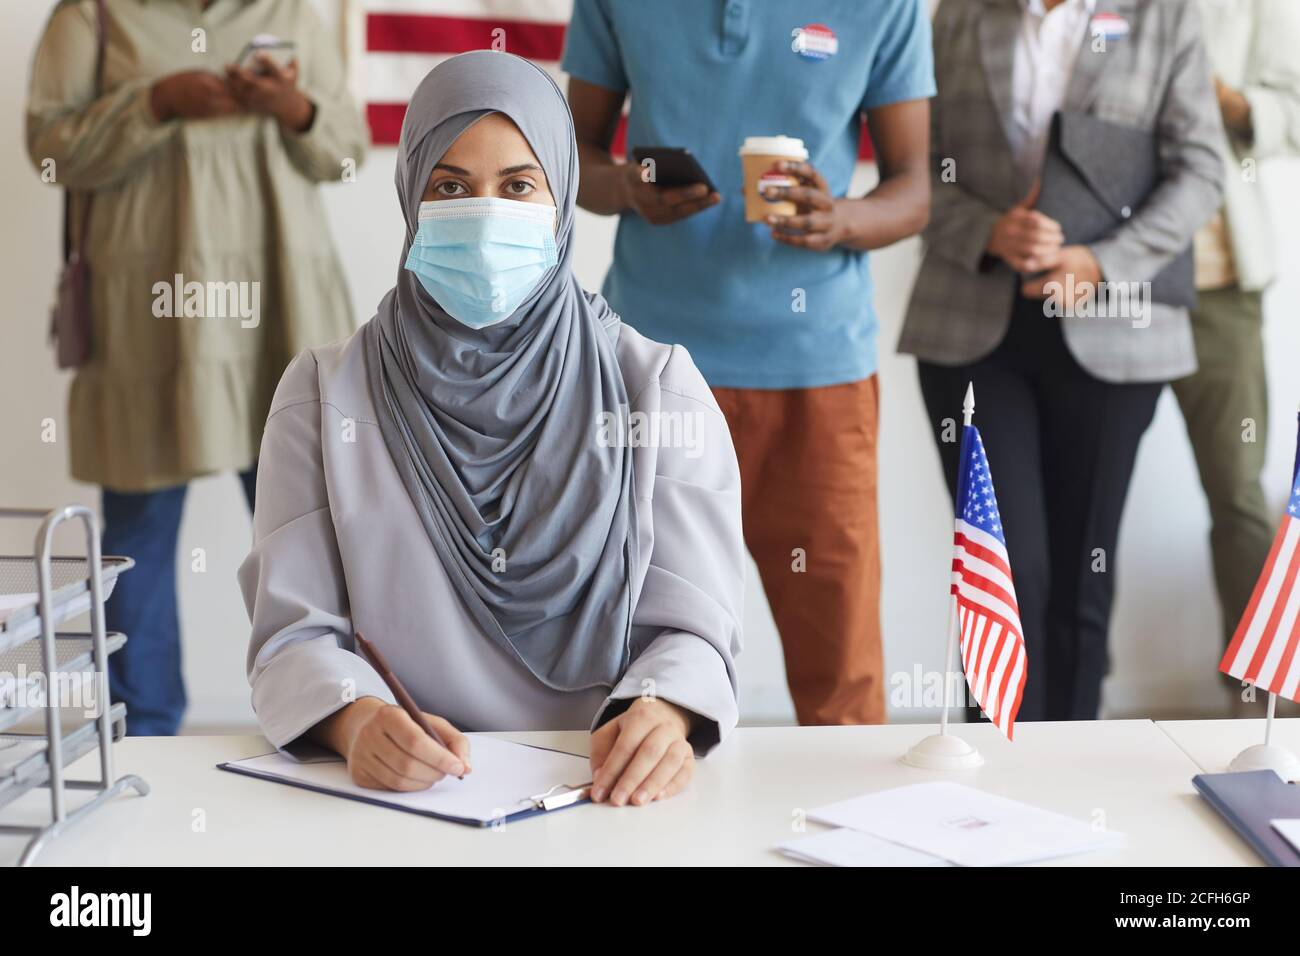 Multiethnische Gruppe von Menschen, die am Wahltag in einer Reihe stehen und Masken in der Wahlstation tragen, konzentrieren sich auf junge arabische Frau, die bei der Registrierung für die Wahl auf die Kamera schaut, Kopierraum Stockfoto